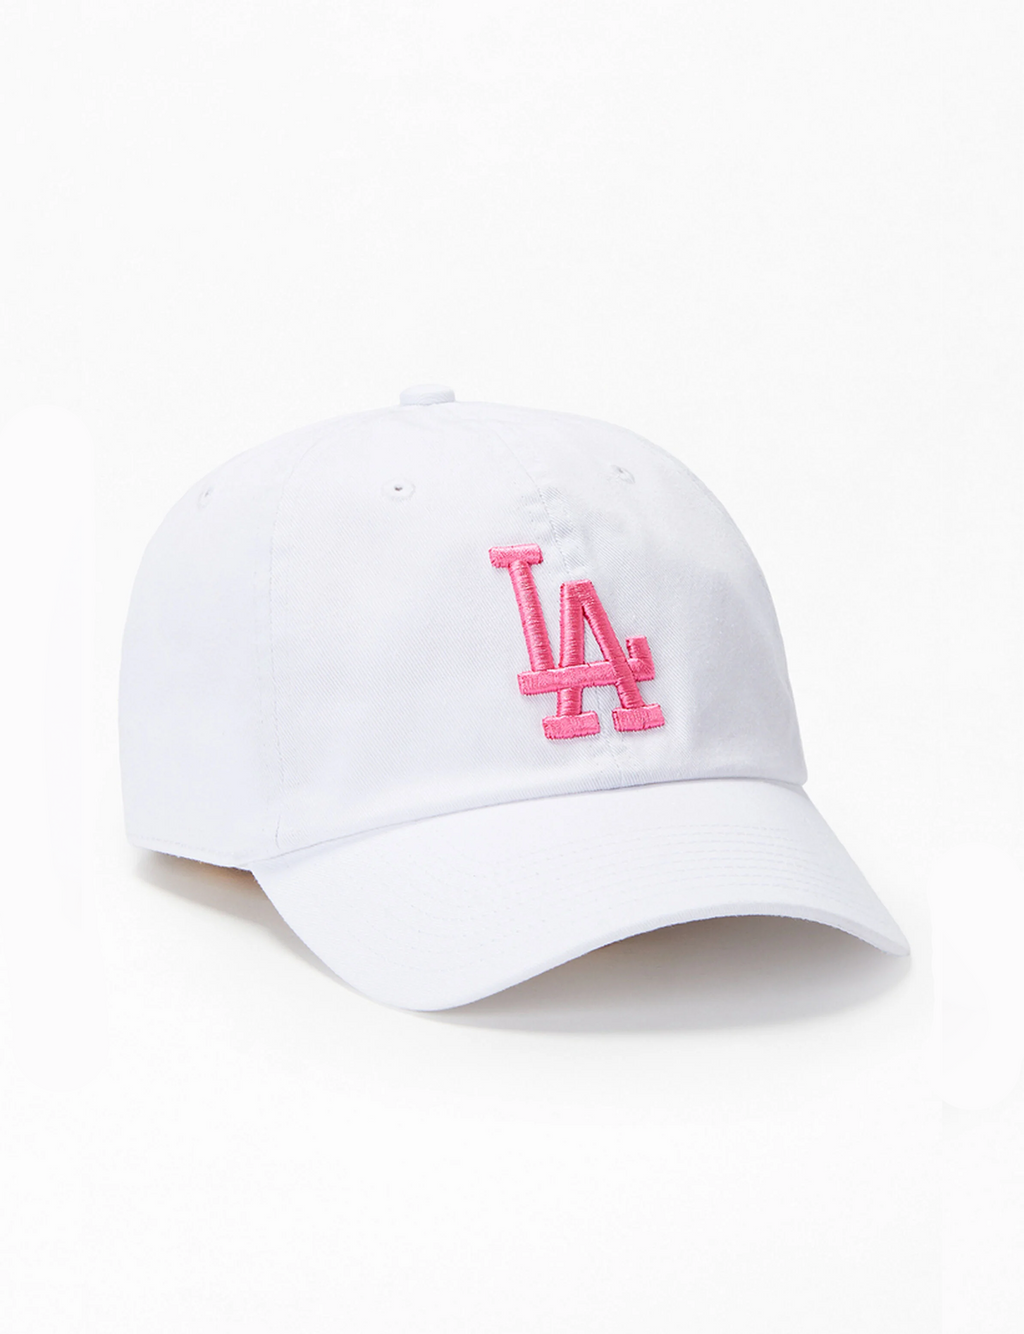 LA Dodgers Clean Up Cap, White/Pink